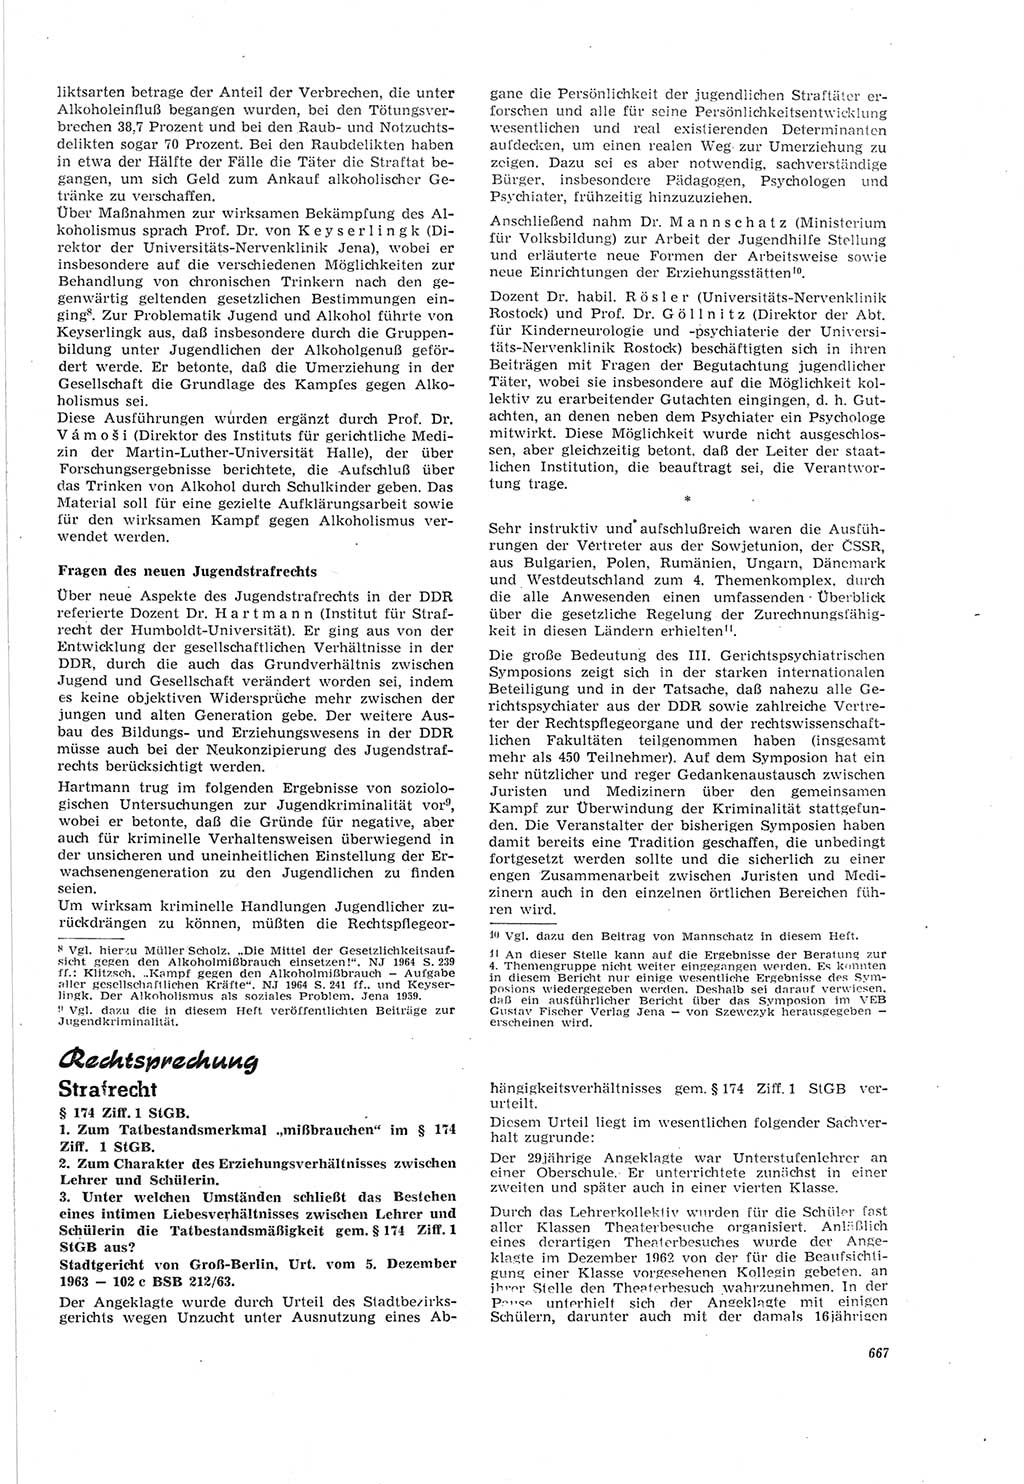 Neue Justiz (NJ), Zeitschrift für Recht und Rechtswissenschaft [Deutsche Demokratische Republik (DDR)], 18. Jahrgang 1964, Seite 667 (NJ DDR 1964, S. 667)